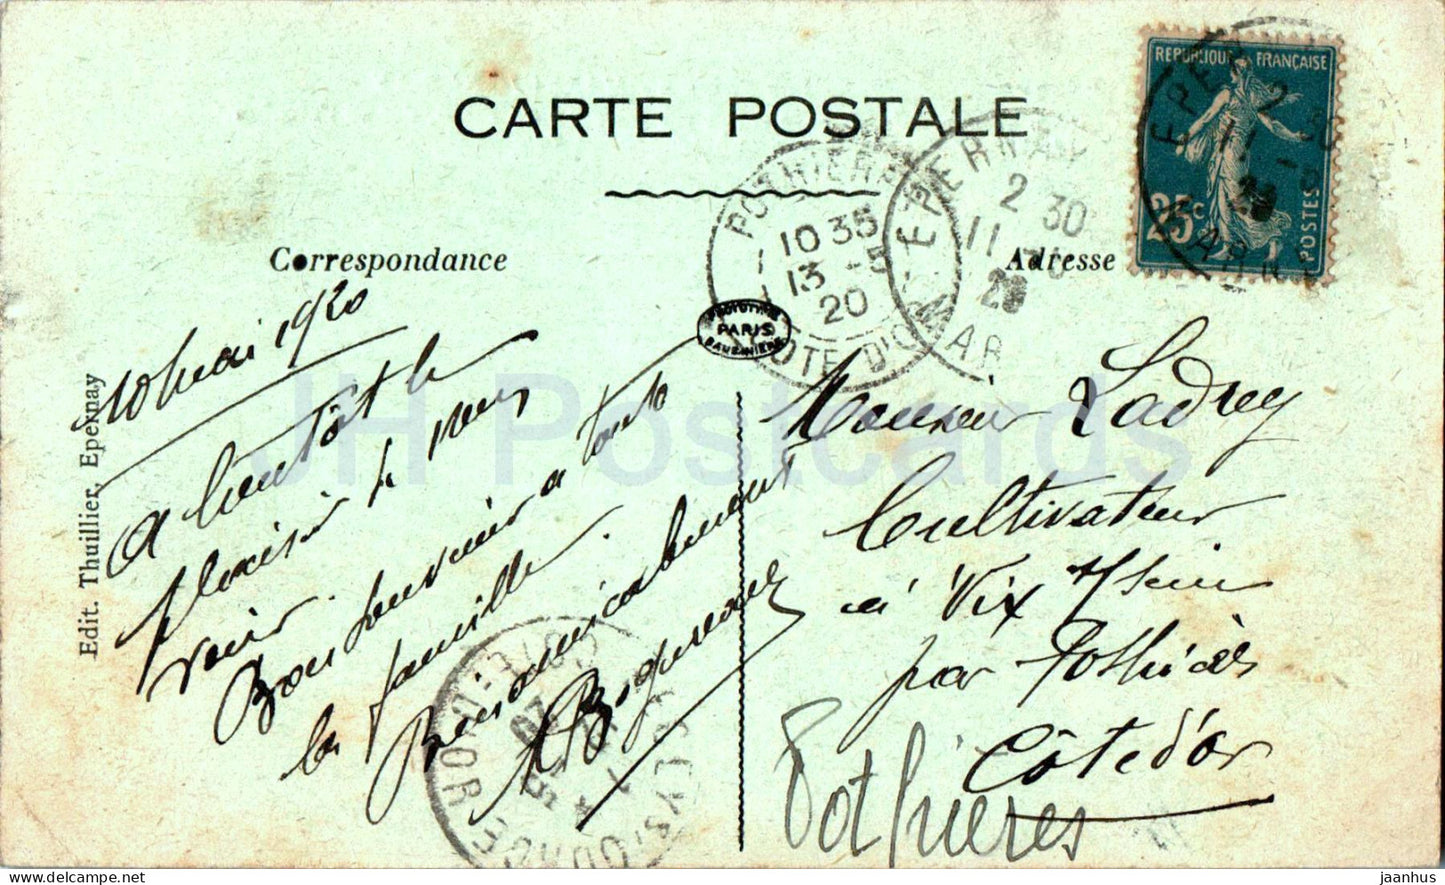 Mareuil sur Ay - Les Goisses - La Champagne - alte Postkarte - 1920 - Frankreich - gebraucht 